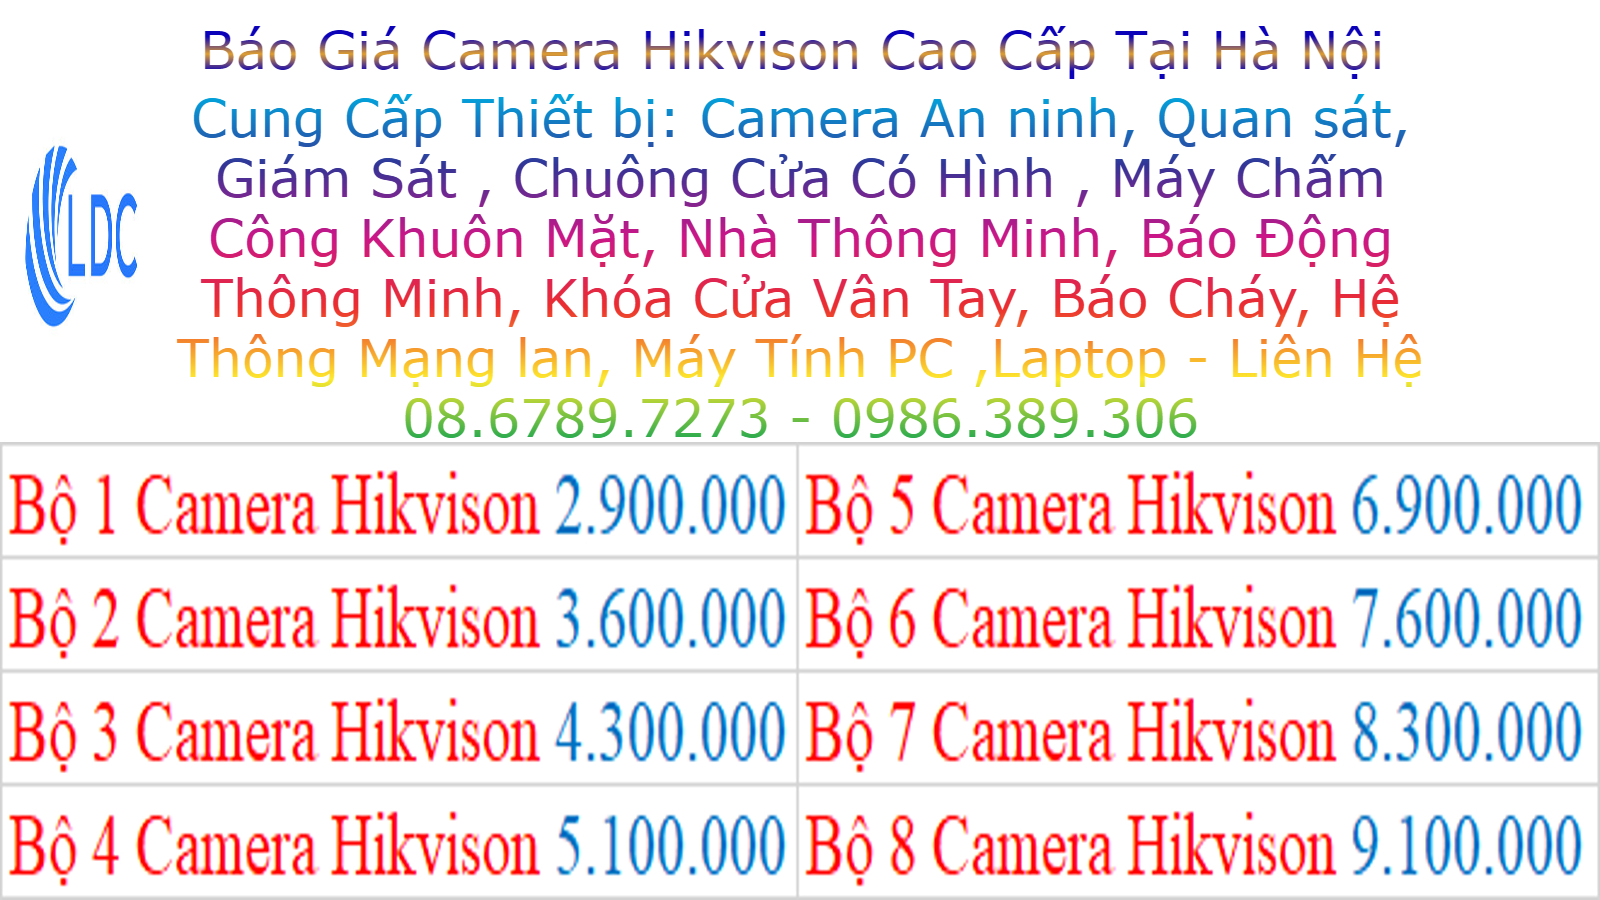 Lắp Đặt Camera Hikvision Ở Tại Triều khúc Thanh Trì Camera Quan Sát